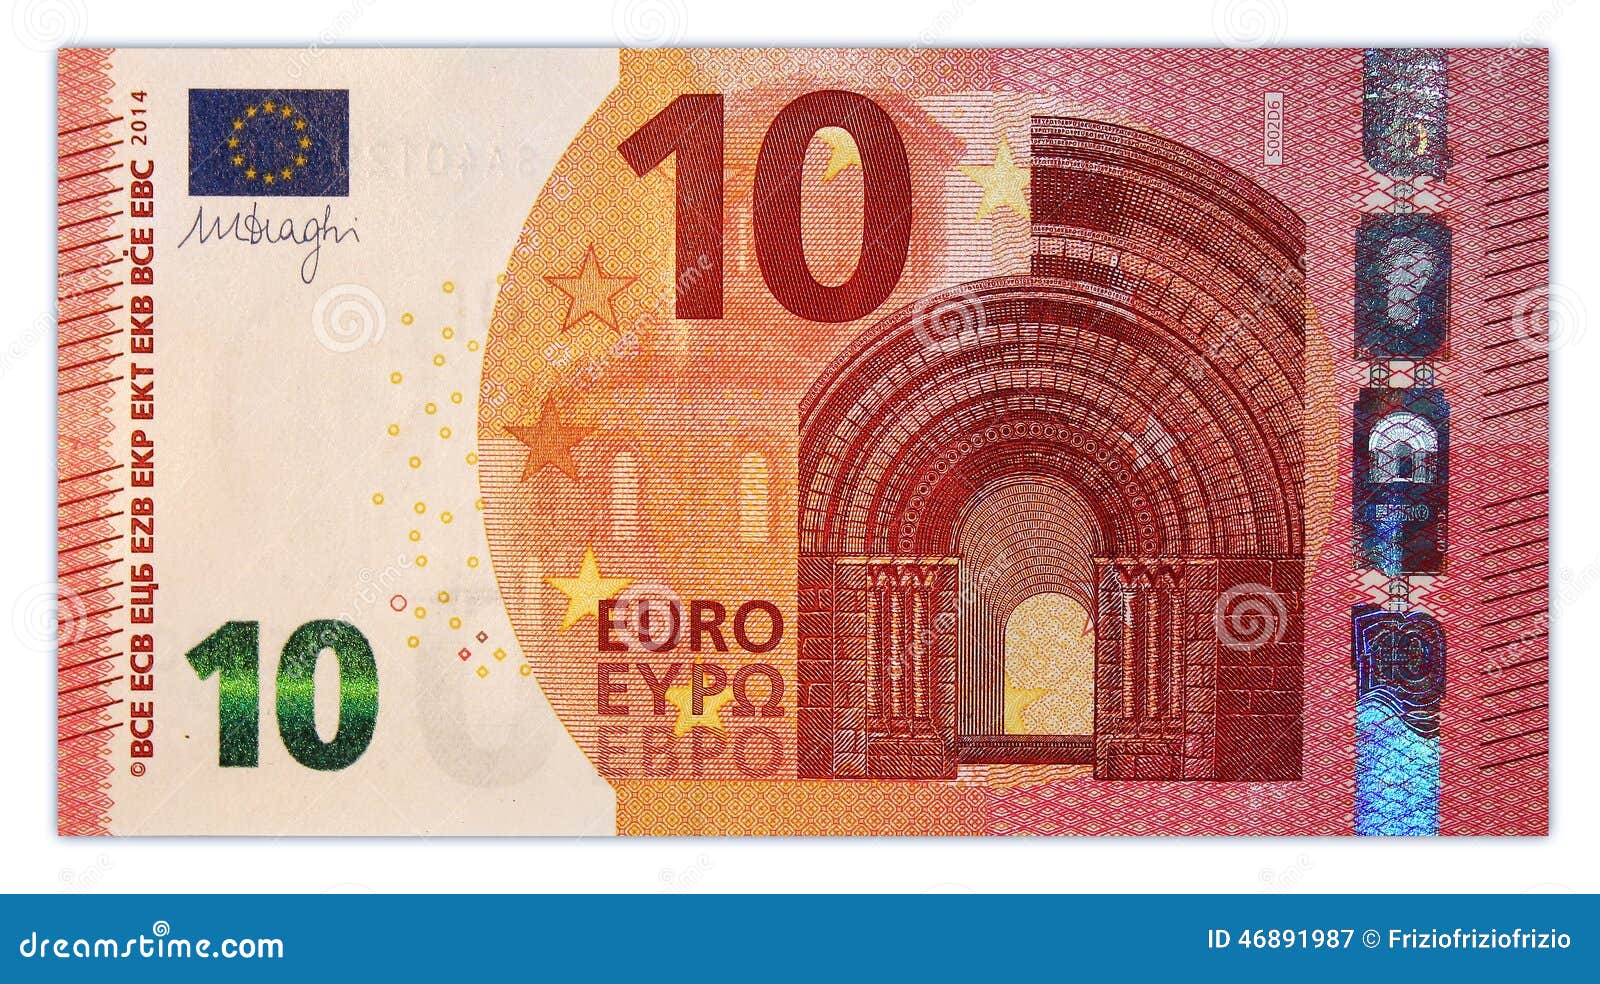 10 euro bonus ohne einzahlung casino topangebot (bestenliste fГјr )